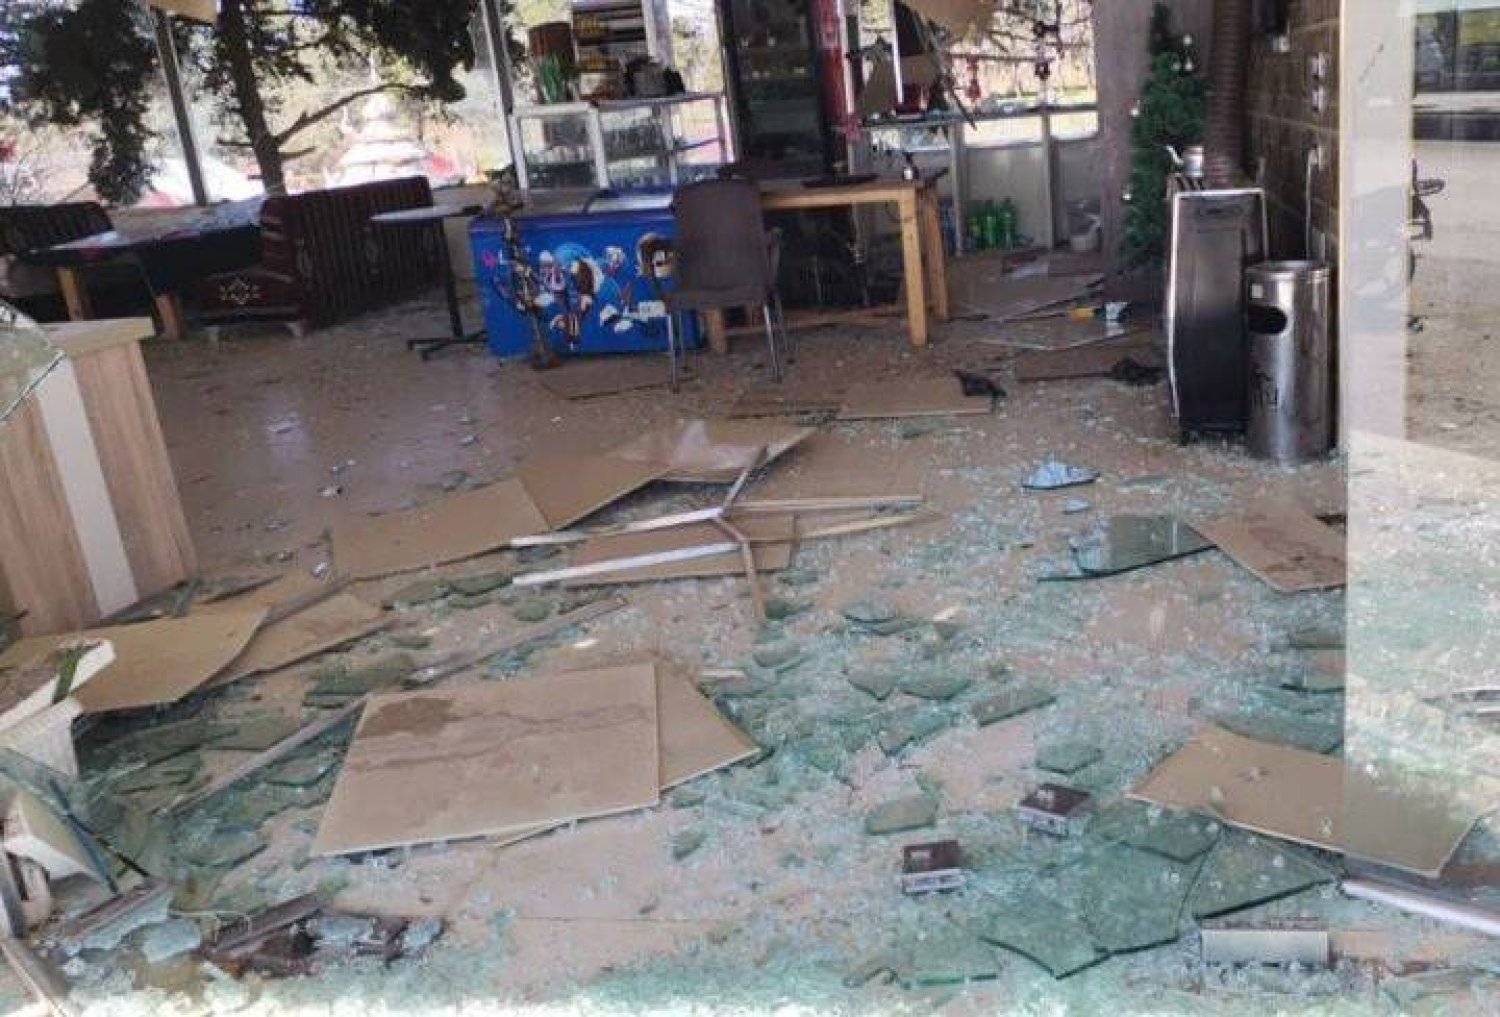 أضرار مادية في أحد المطاعم بالمالكية شمال شرقي سوريا بعد قصف المسيرات التركية (منصة إكس)